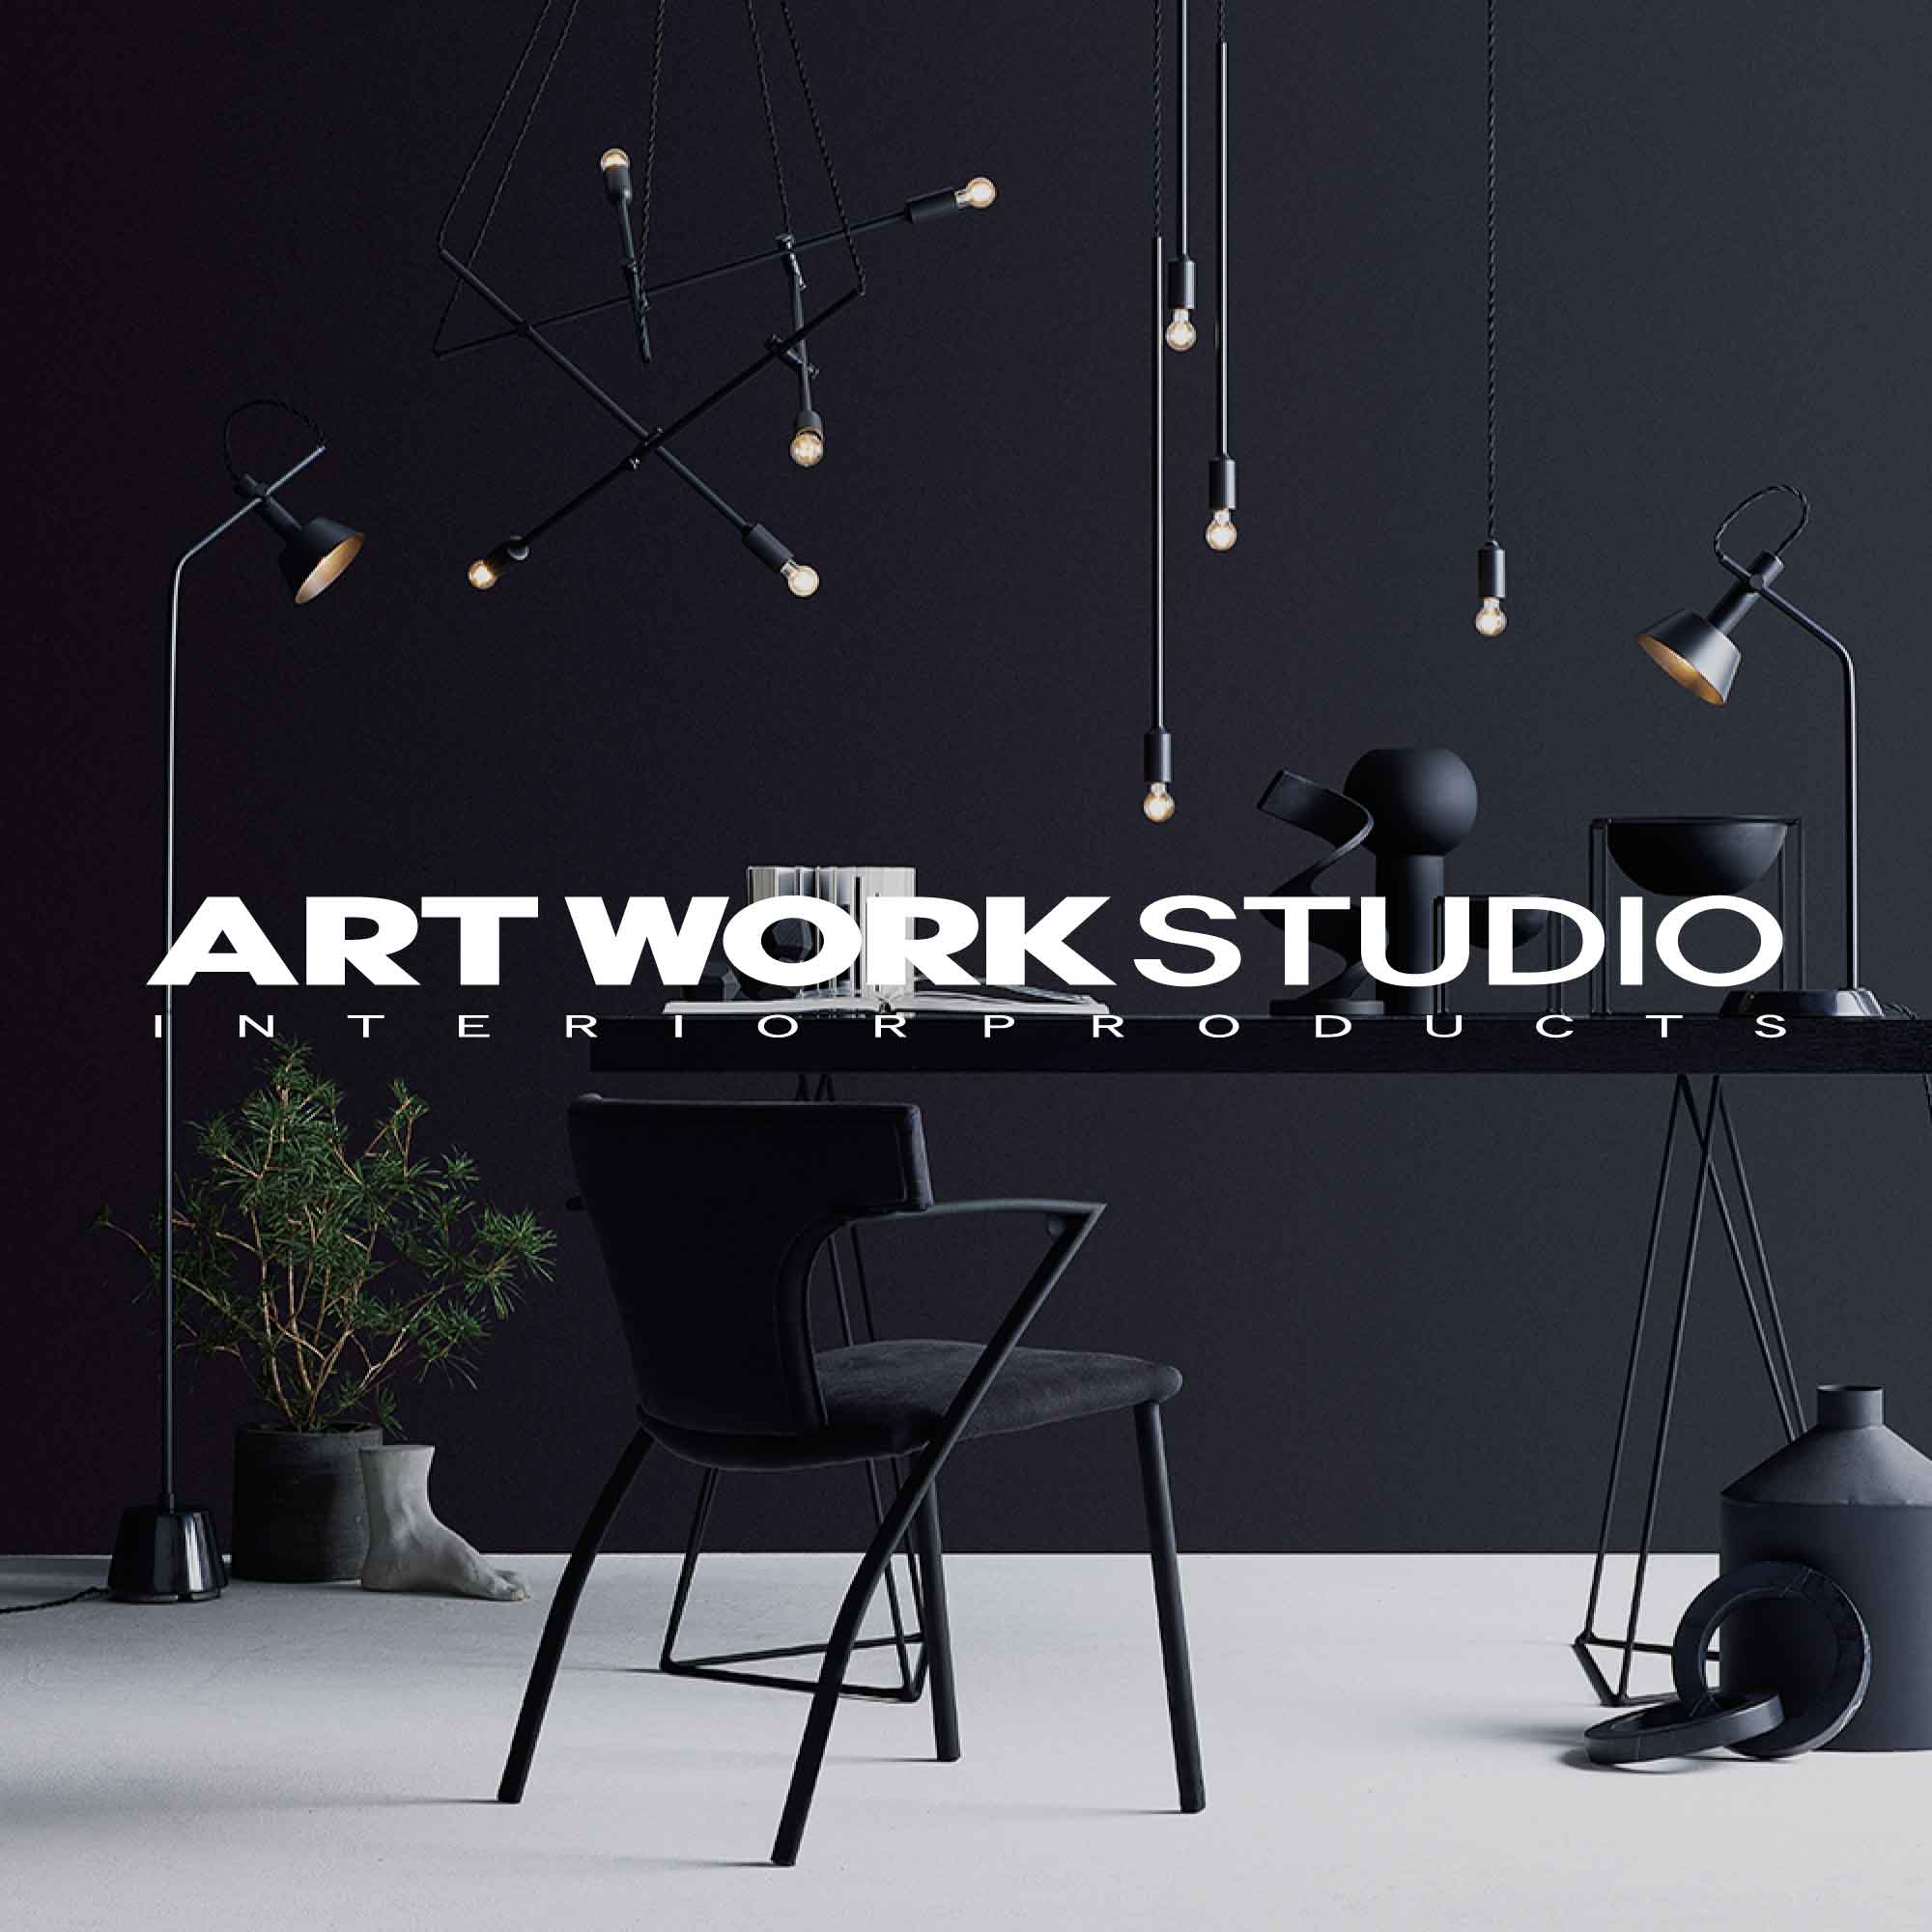 ART WORK STUDIO